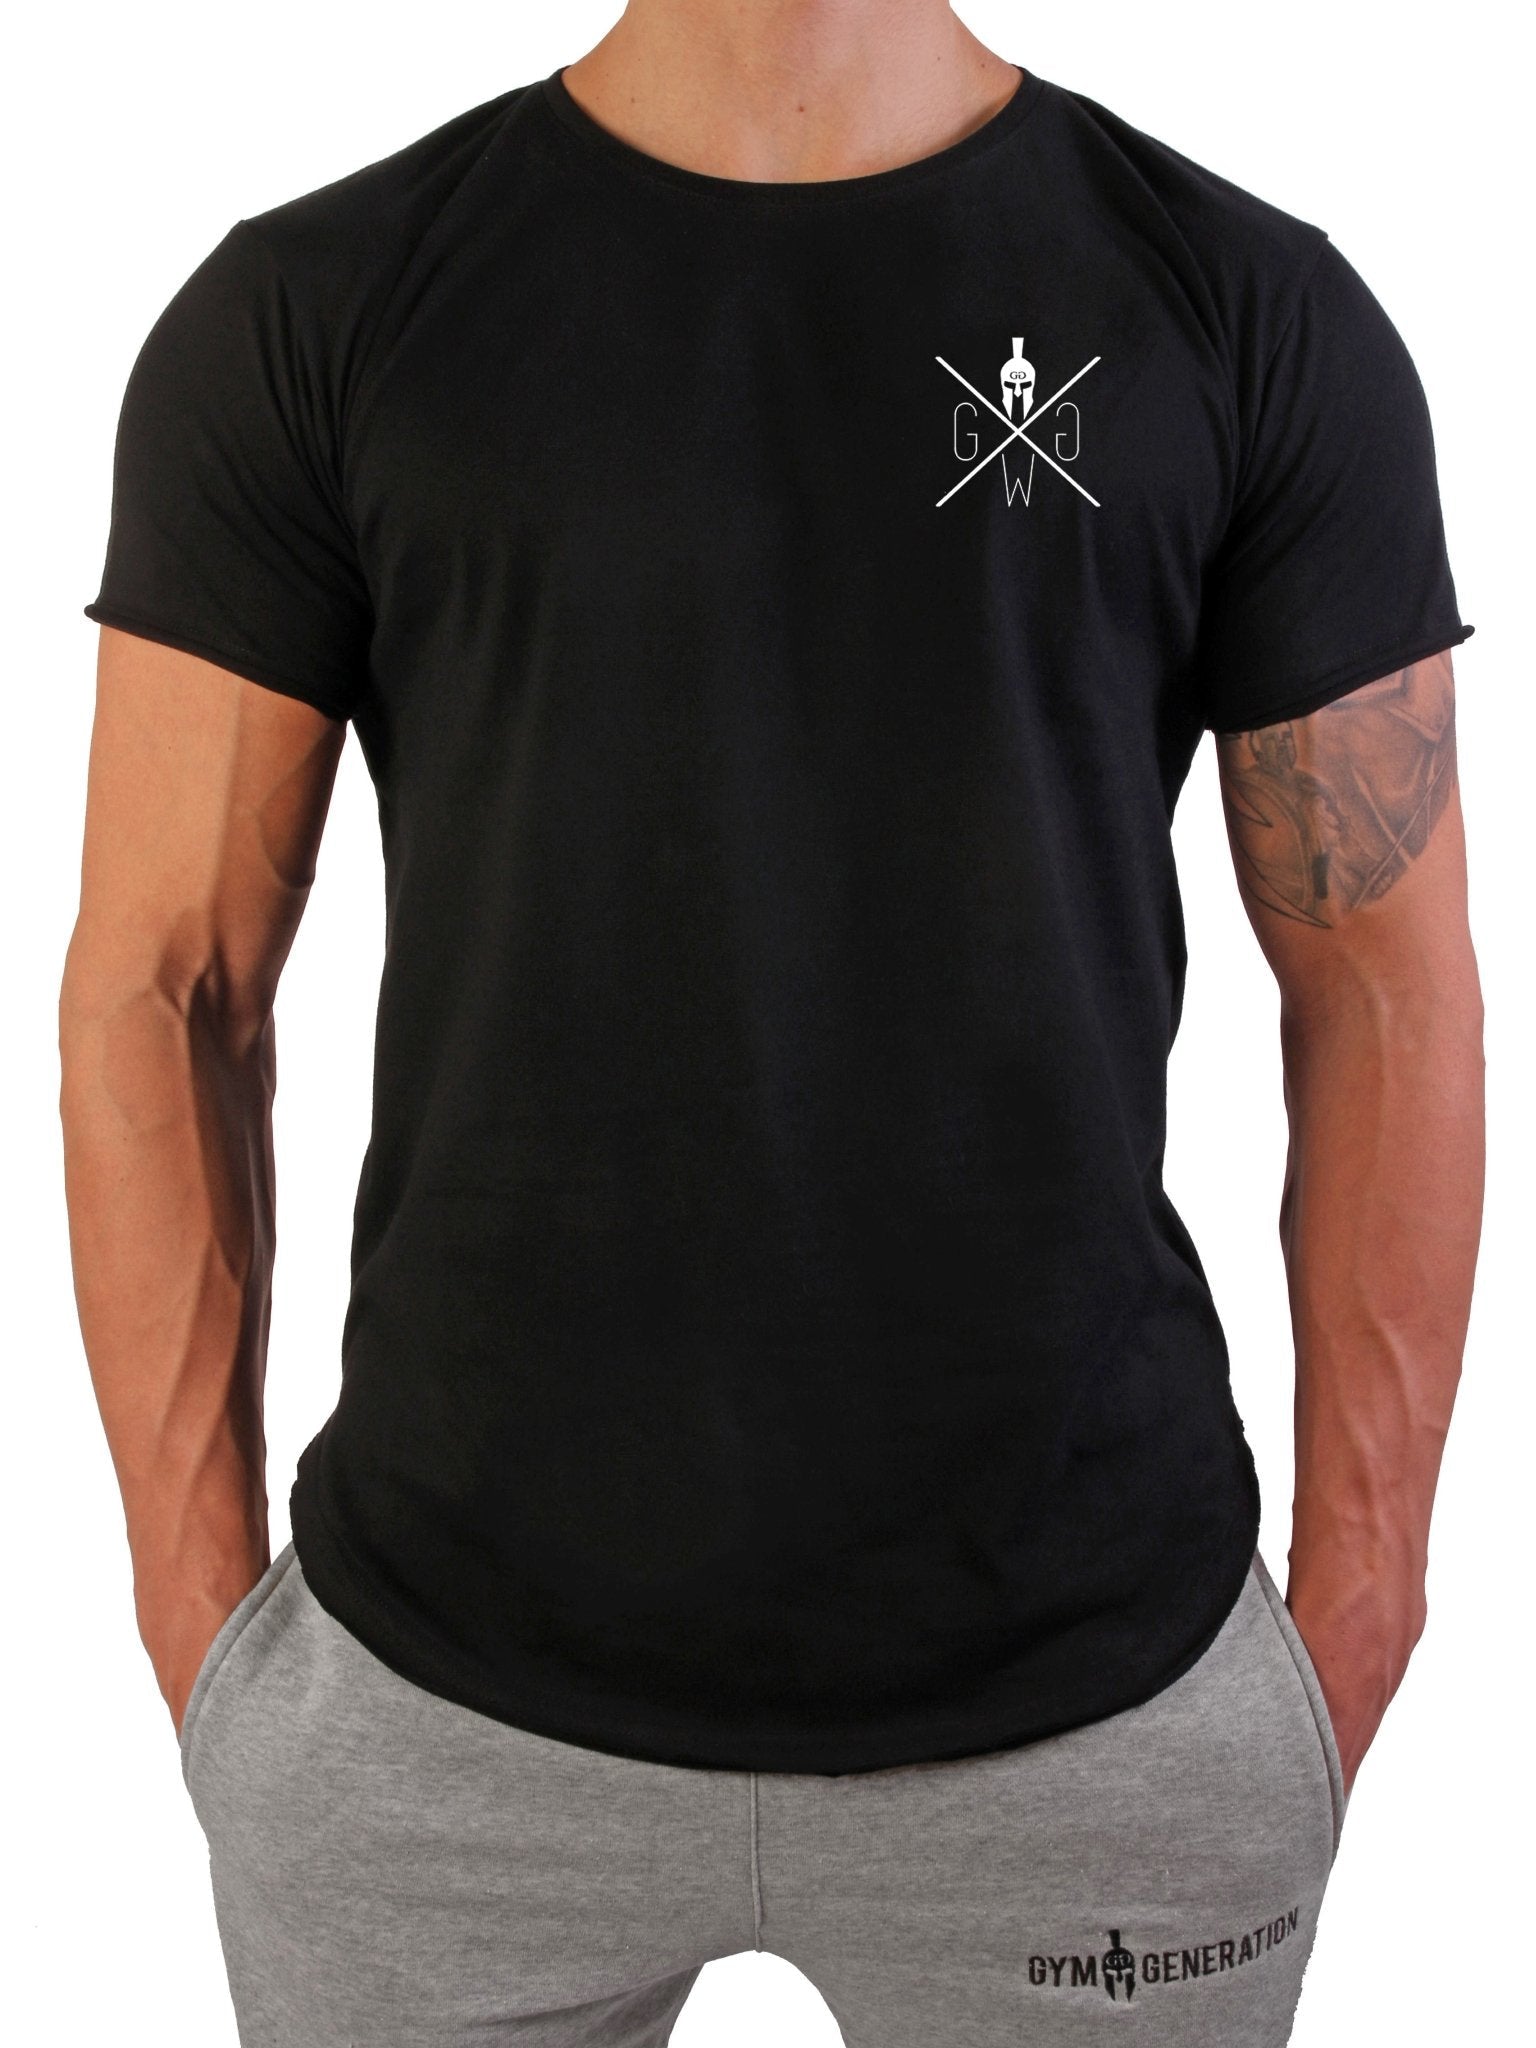 Zeitloses Stay Hungry T-Shirt mit markantem Design, ideal für lässige Looks und sportliche Outfits.